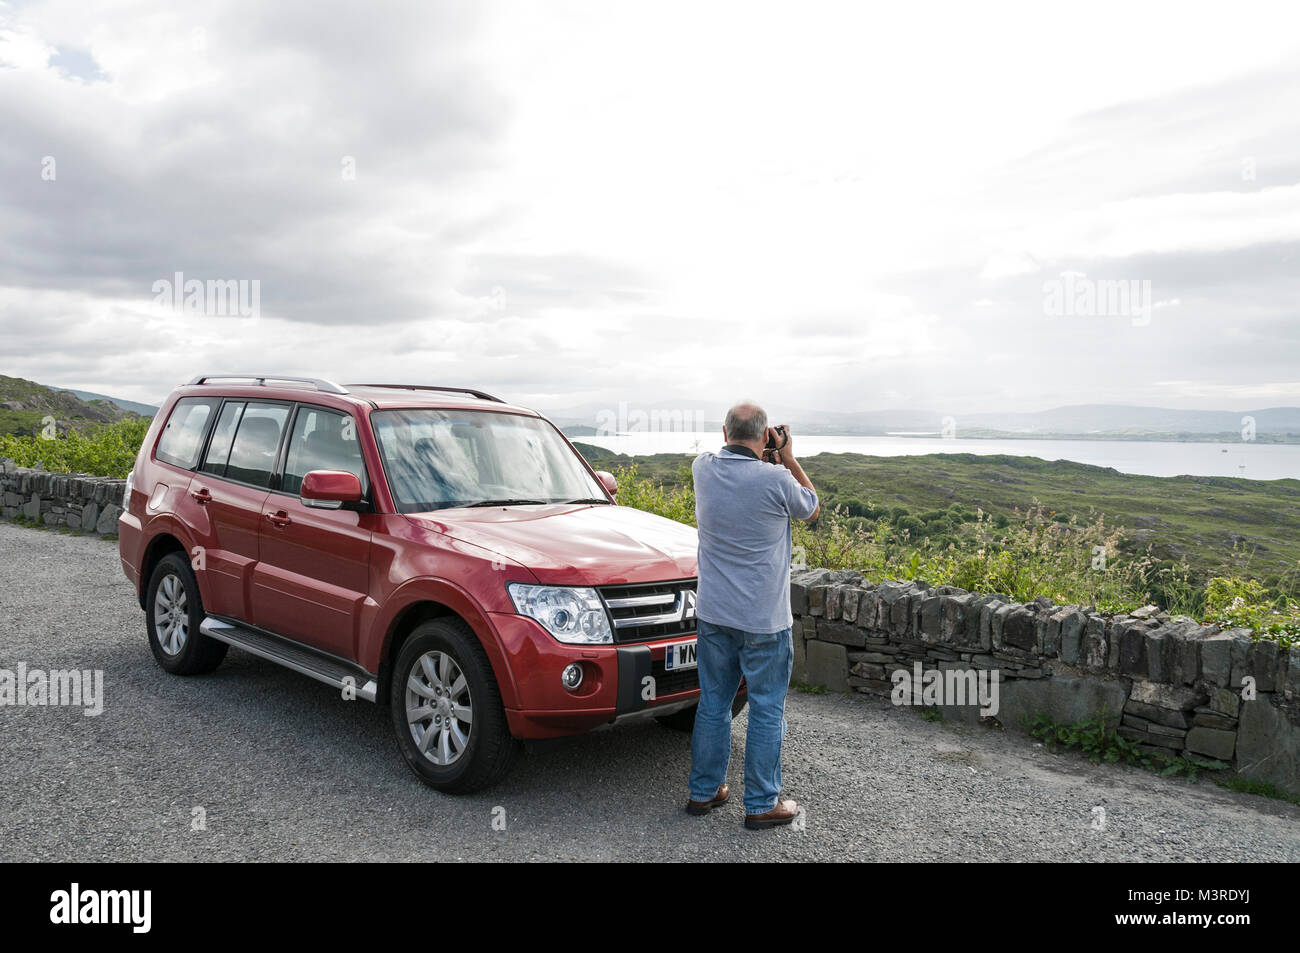 Fotógrafo de viajes, Richard Sowersby paradas para tomar una fotografía en el anillo de Beara ,en el suroeste de Irlanda Foto de stock